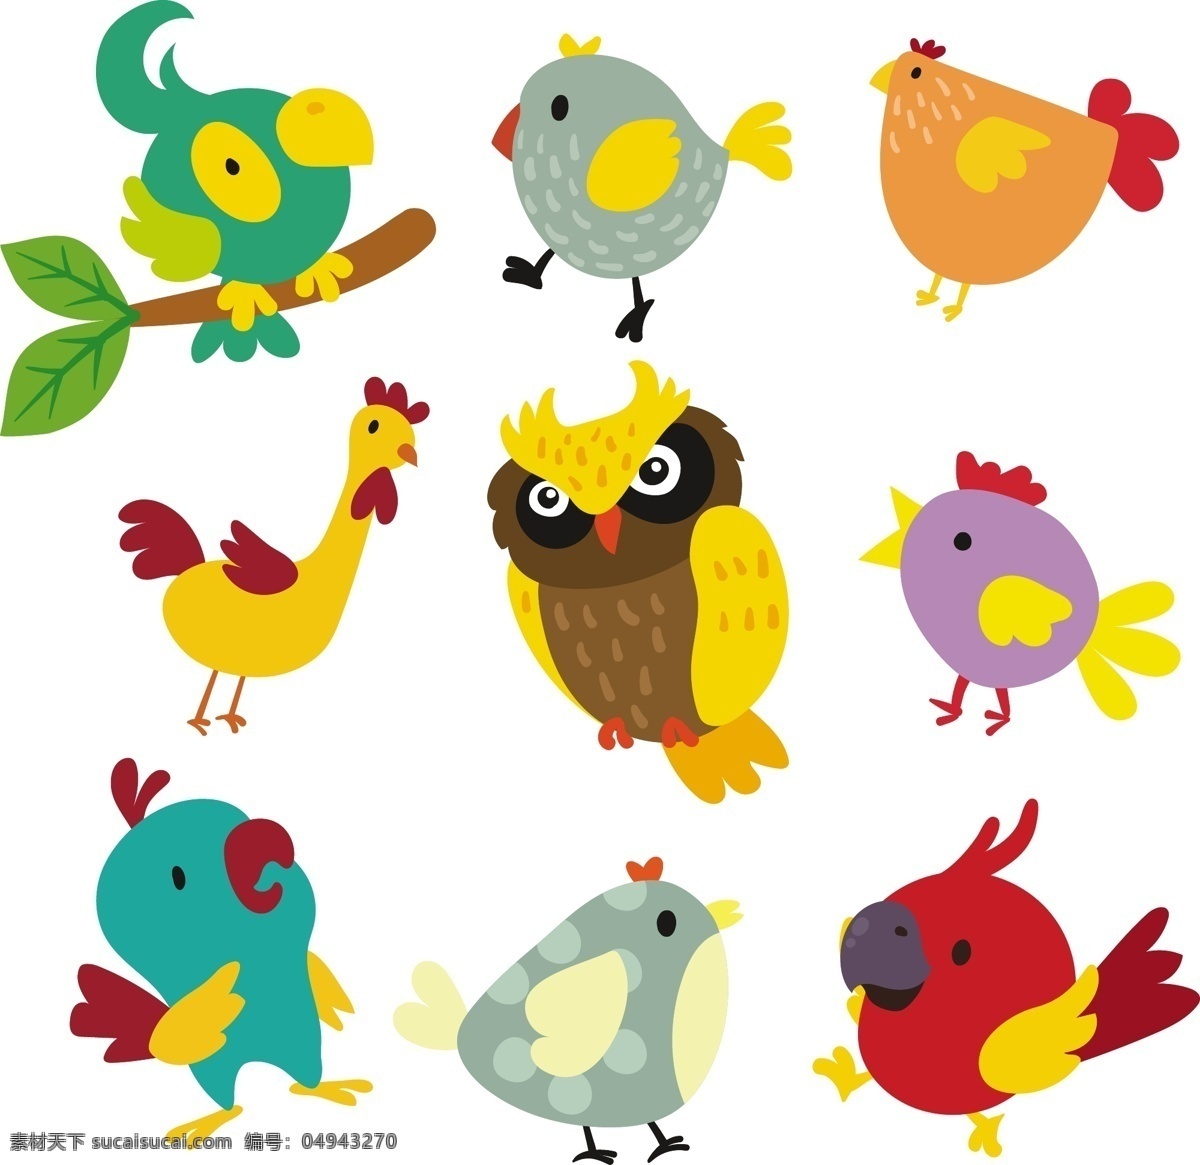 组 各种 鸟类 合集 元素 设计素材 创意设计 动物 小动物 卡通 可爱 矢量素材 鹦鹉 猫头鹰 彩色